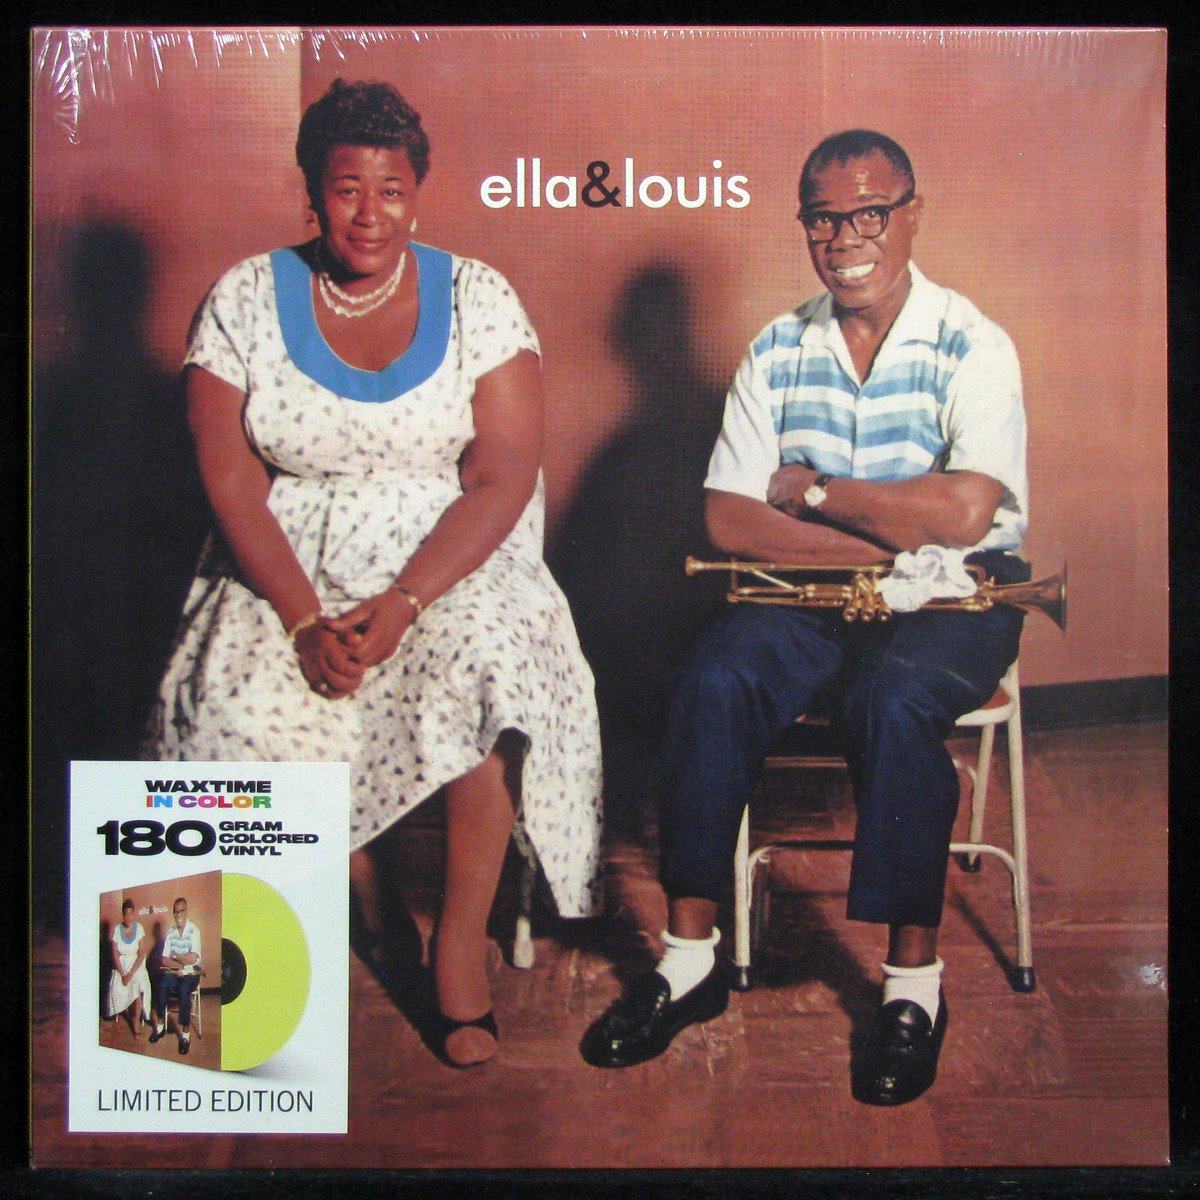 LP Ella Fitzgerald / Louis Armstrong — Ella And Louis (coloured vinyl) фото